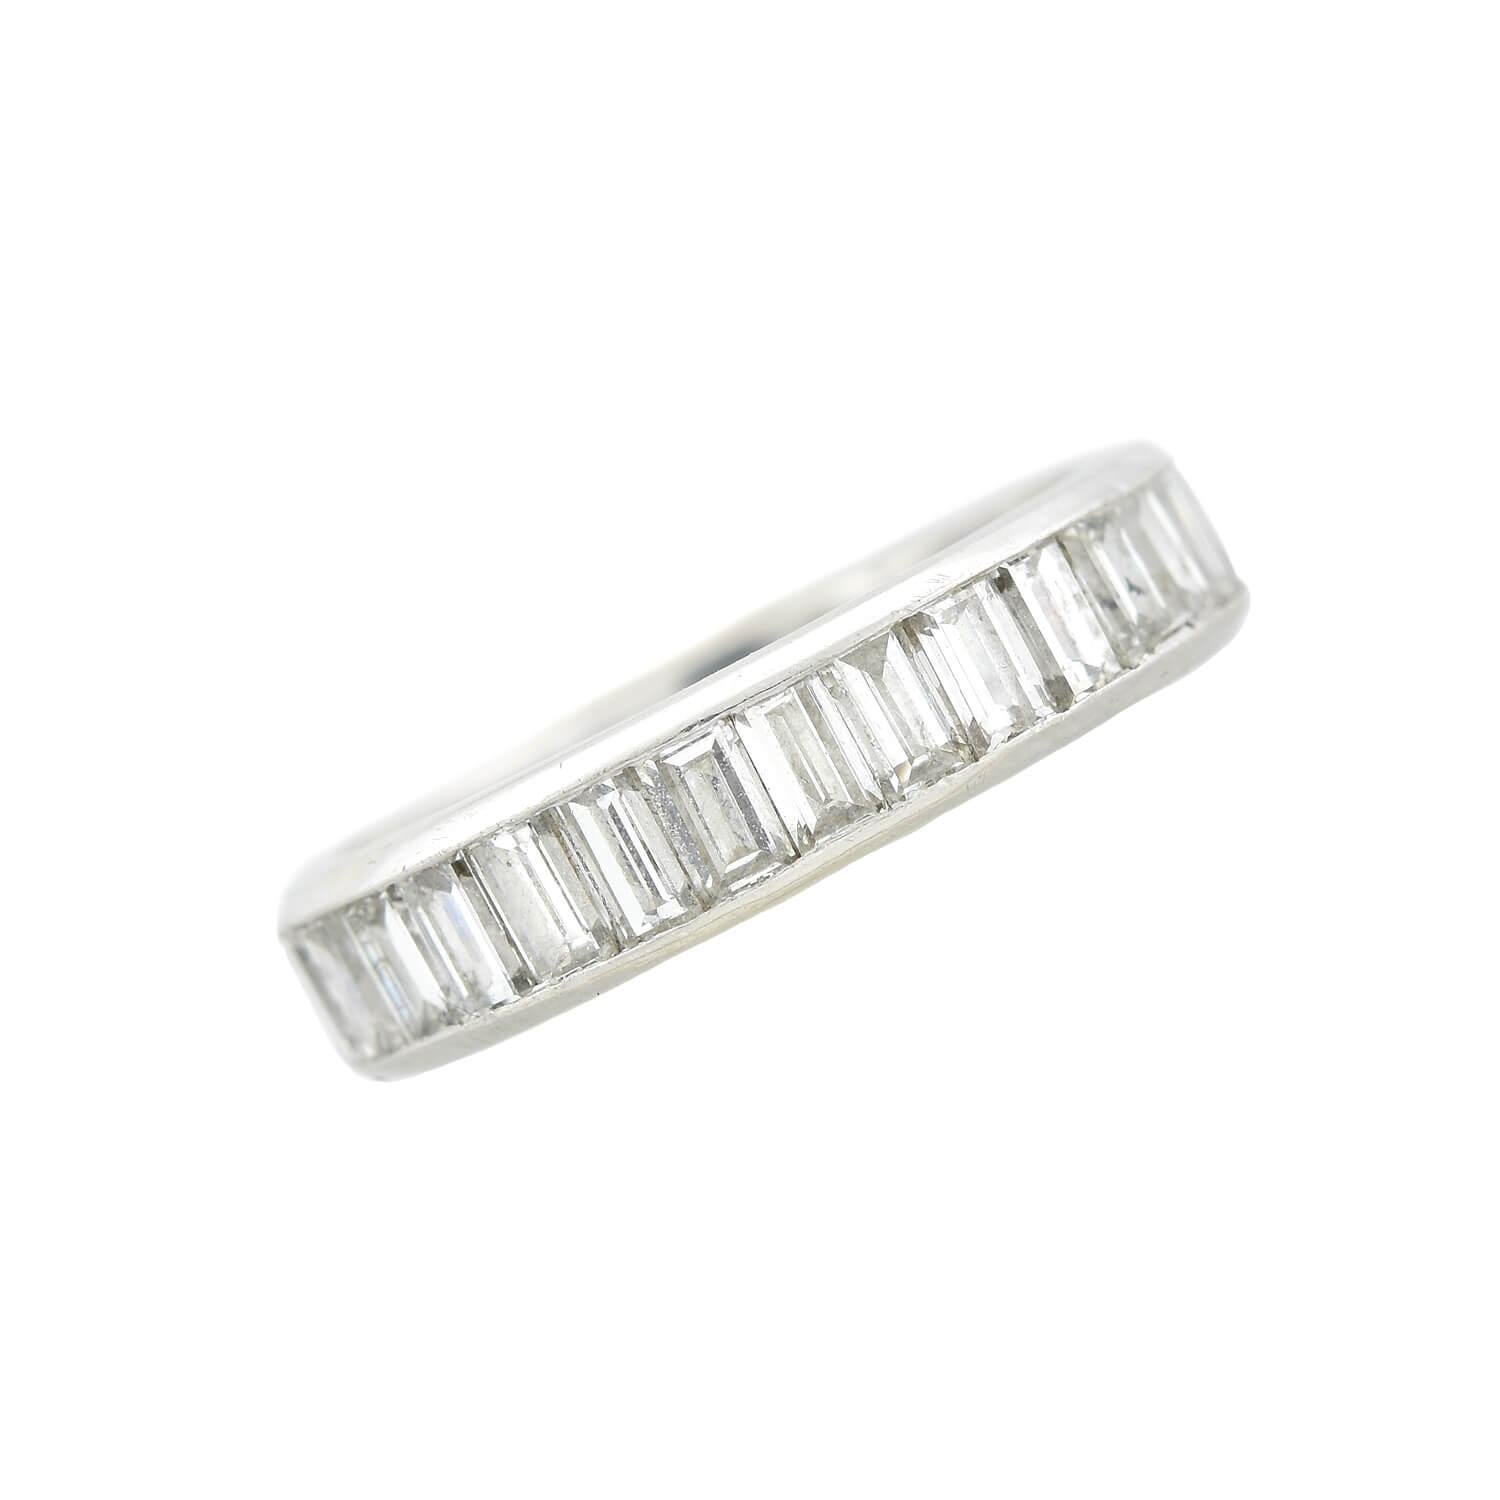 Ein atemberaubendes Diamant-Ewigkeitsarmband aus der Zeit des Art Deco (ca. 1930er Jahre)! Dieser wunderschöne Ring ist aus Platin gefertigt und trägt eine Reihe funkelnder Baguette-Diamanten in einer Kanalfassung. Die Diamanten ziehen sich über die